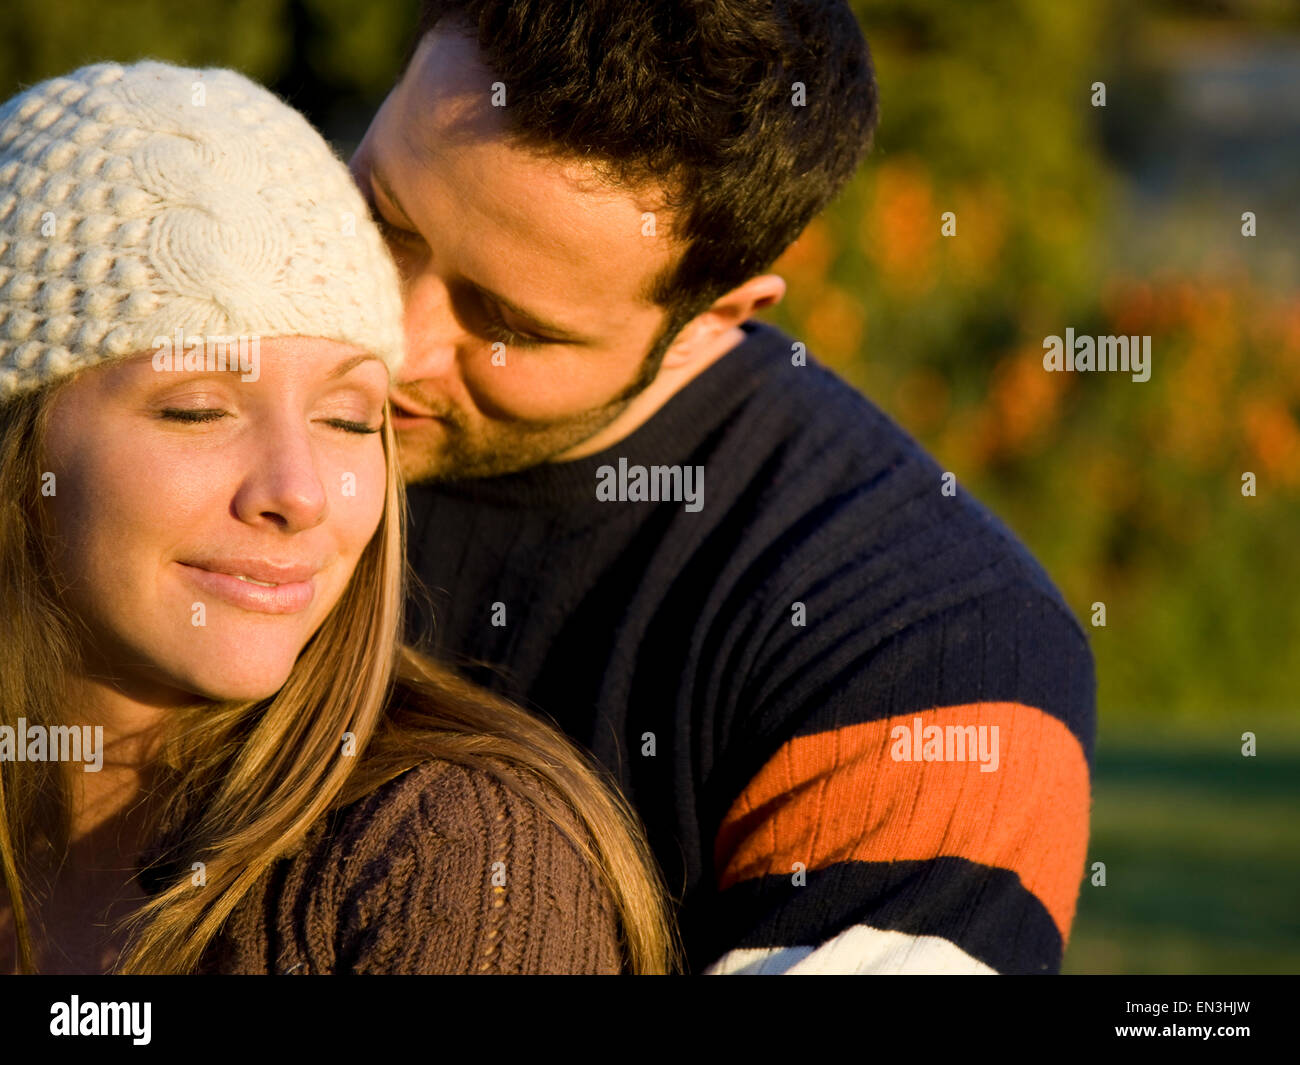 USA, Utah, Provo, Young couple embracing Stock Photo